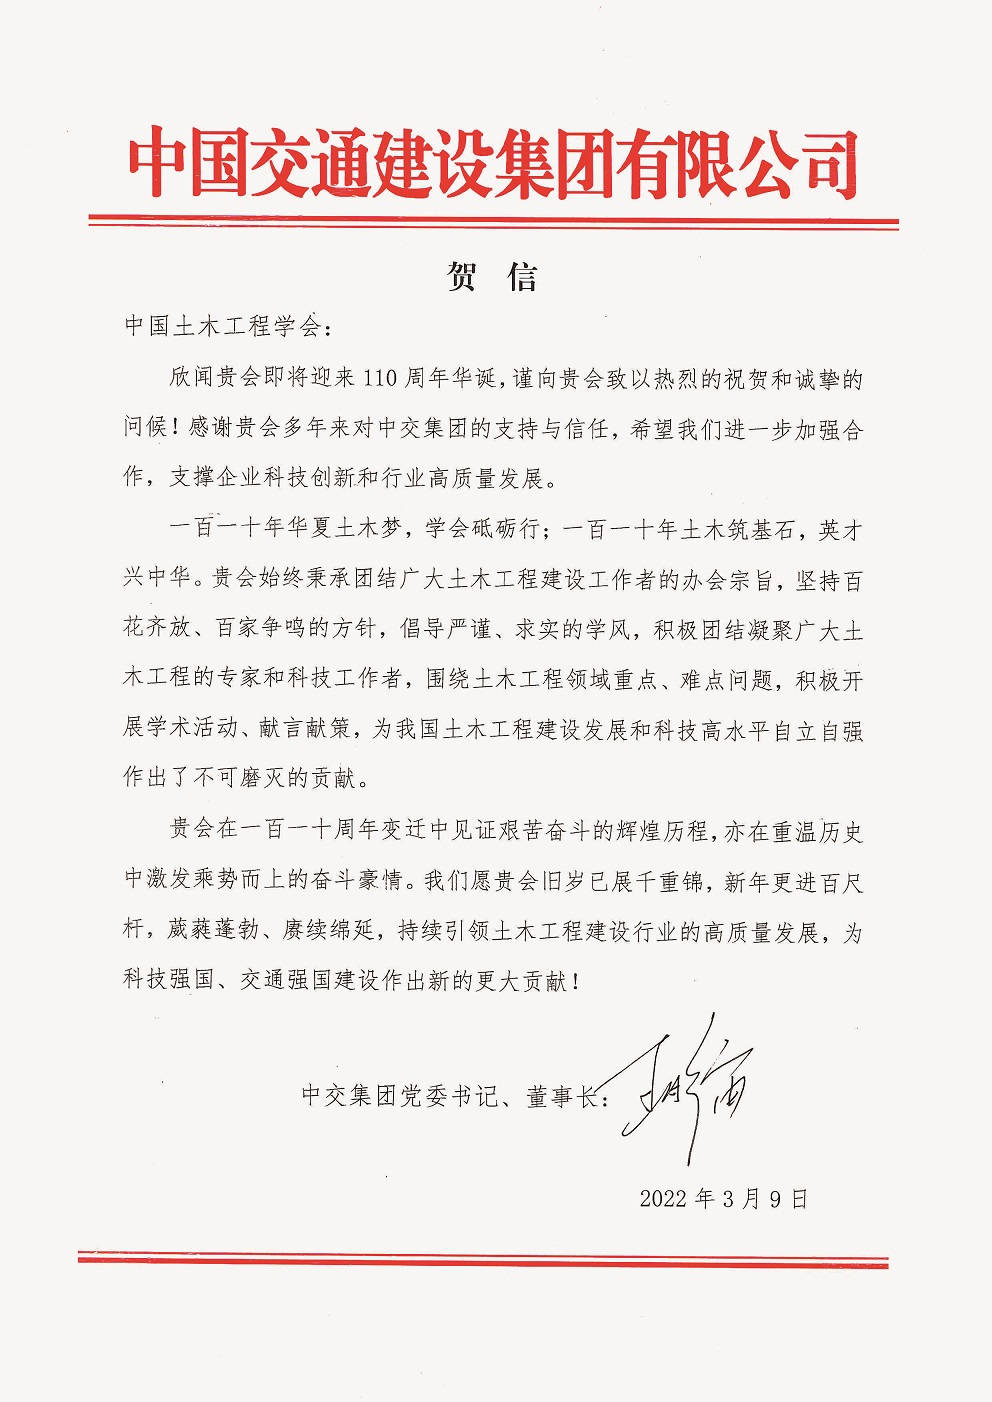 中国交通建设集团有限公司党委书记、董事长王彤宙贺信